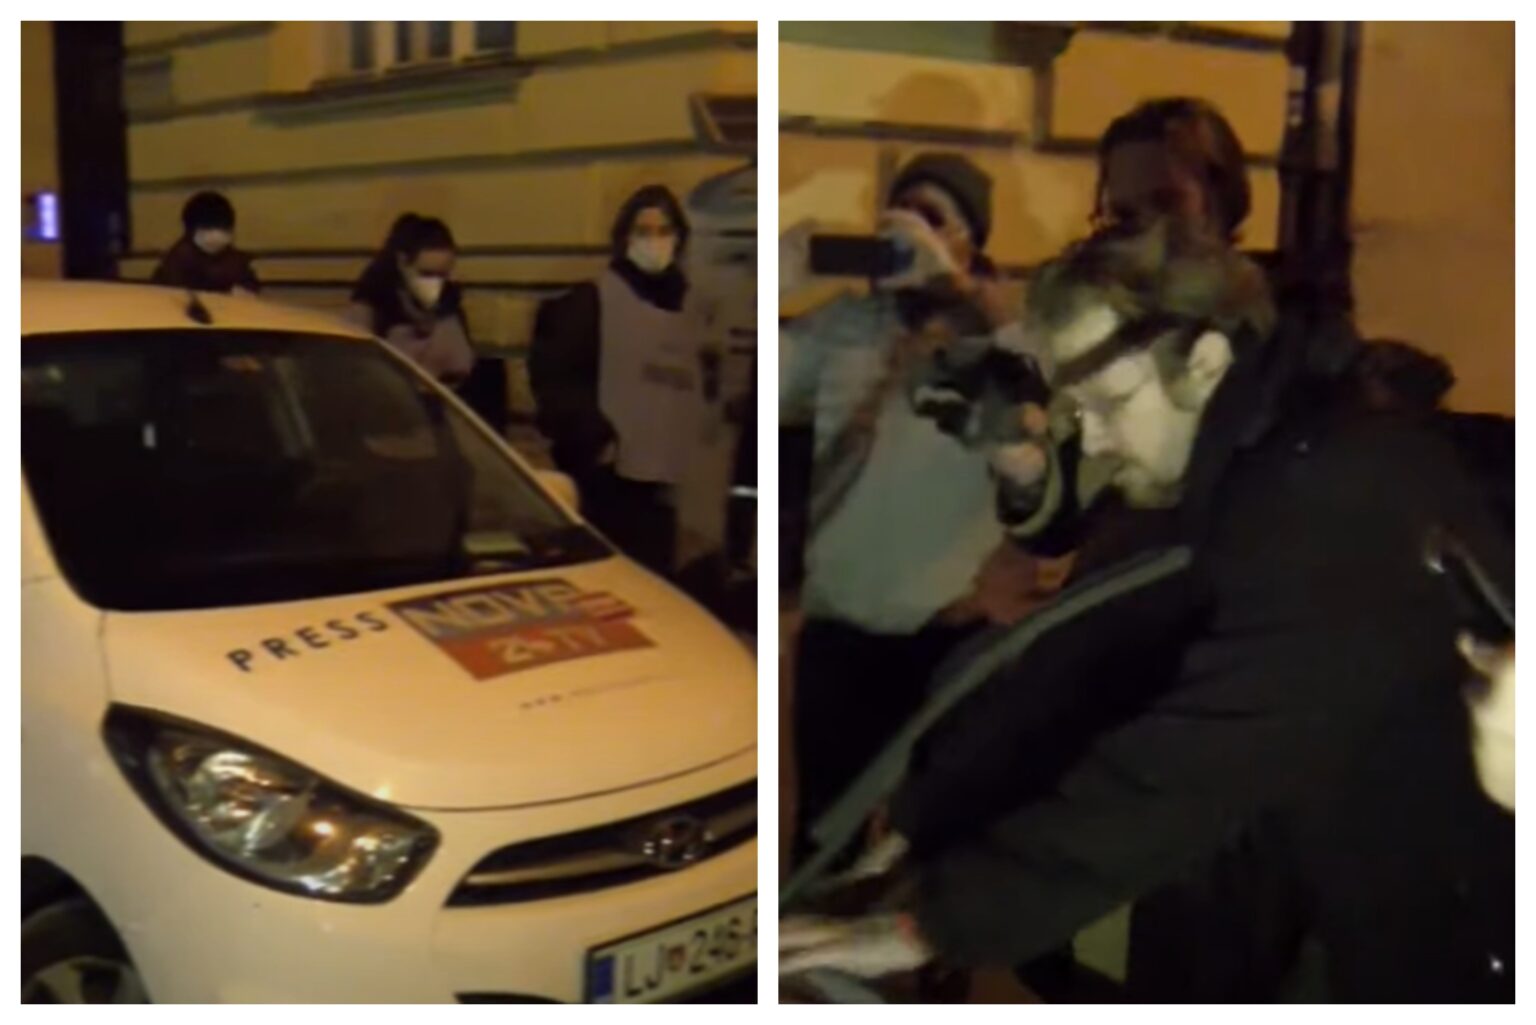 (VIDEO) Avto medijske hiše Nova24TV včeraj dvakrat polepljen – Najprej so mu redarji na vetrobransko steklo “stisnili” kazen za parkiranje, potem pa so ga polepili še protestniki